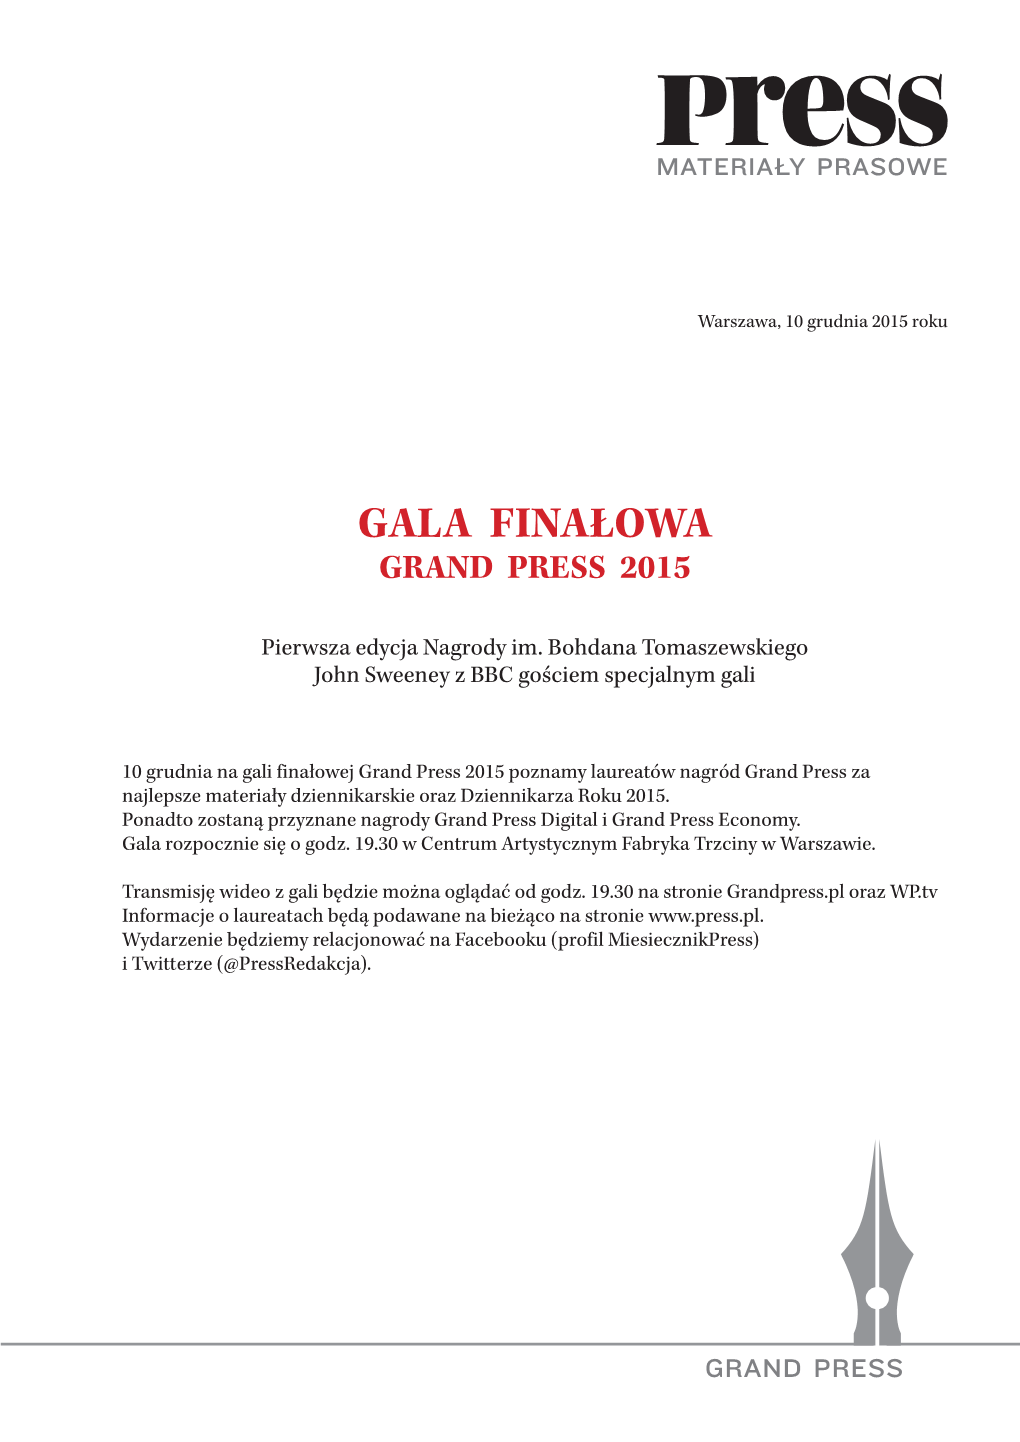 Gala Finałowa Grand Press 2015